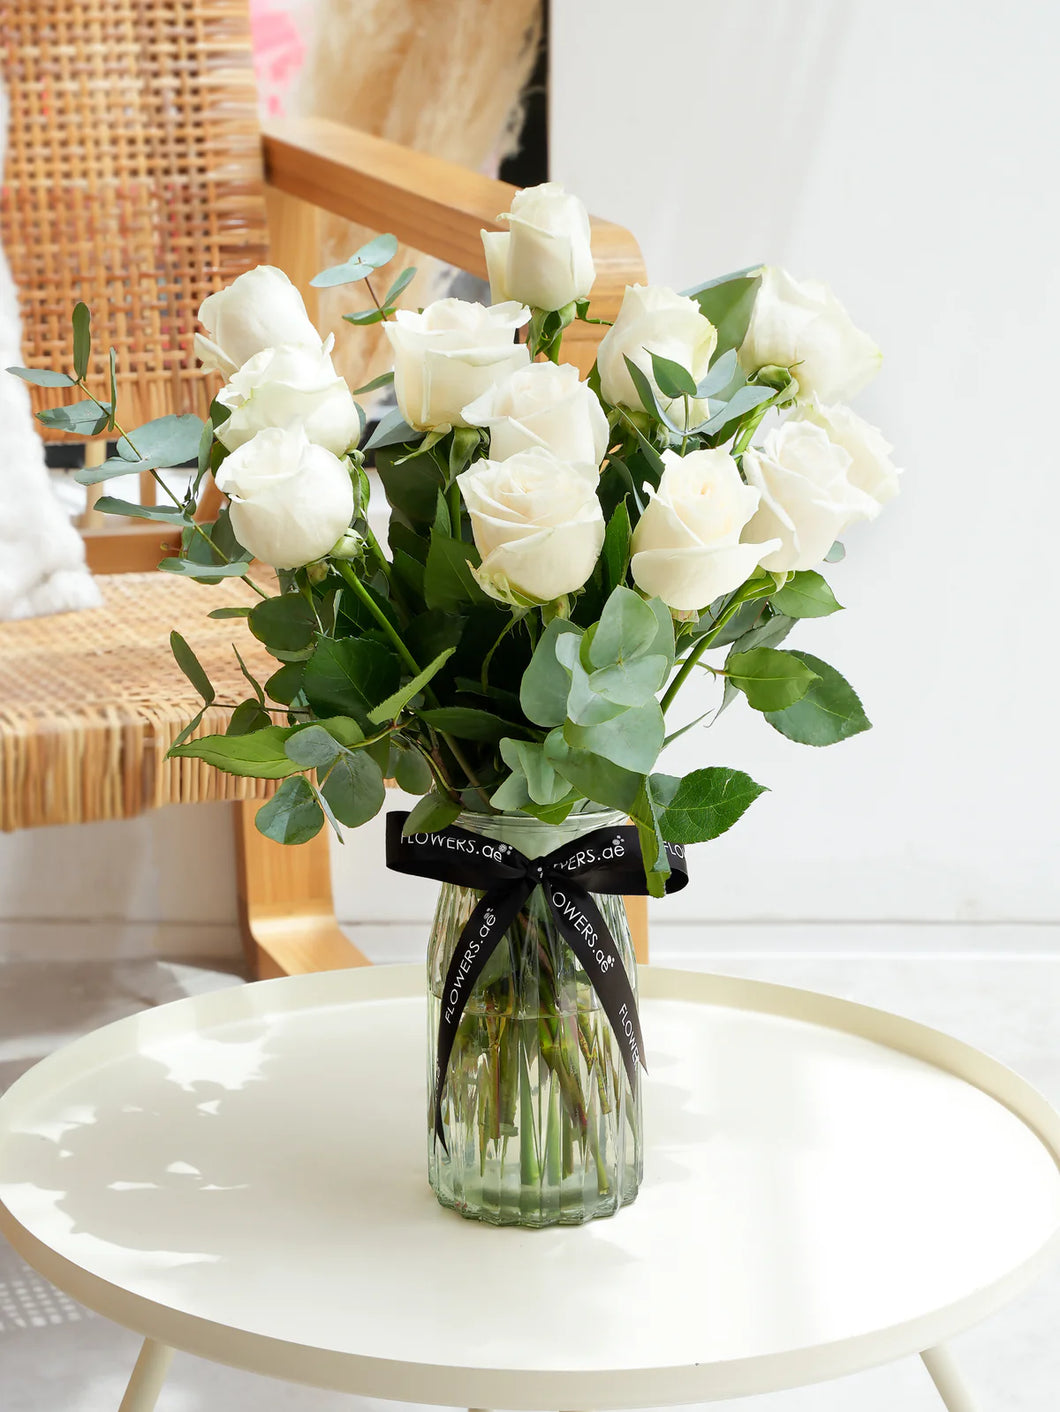 12 white roses vase